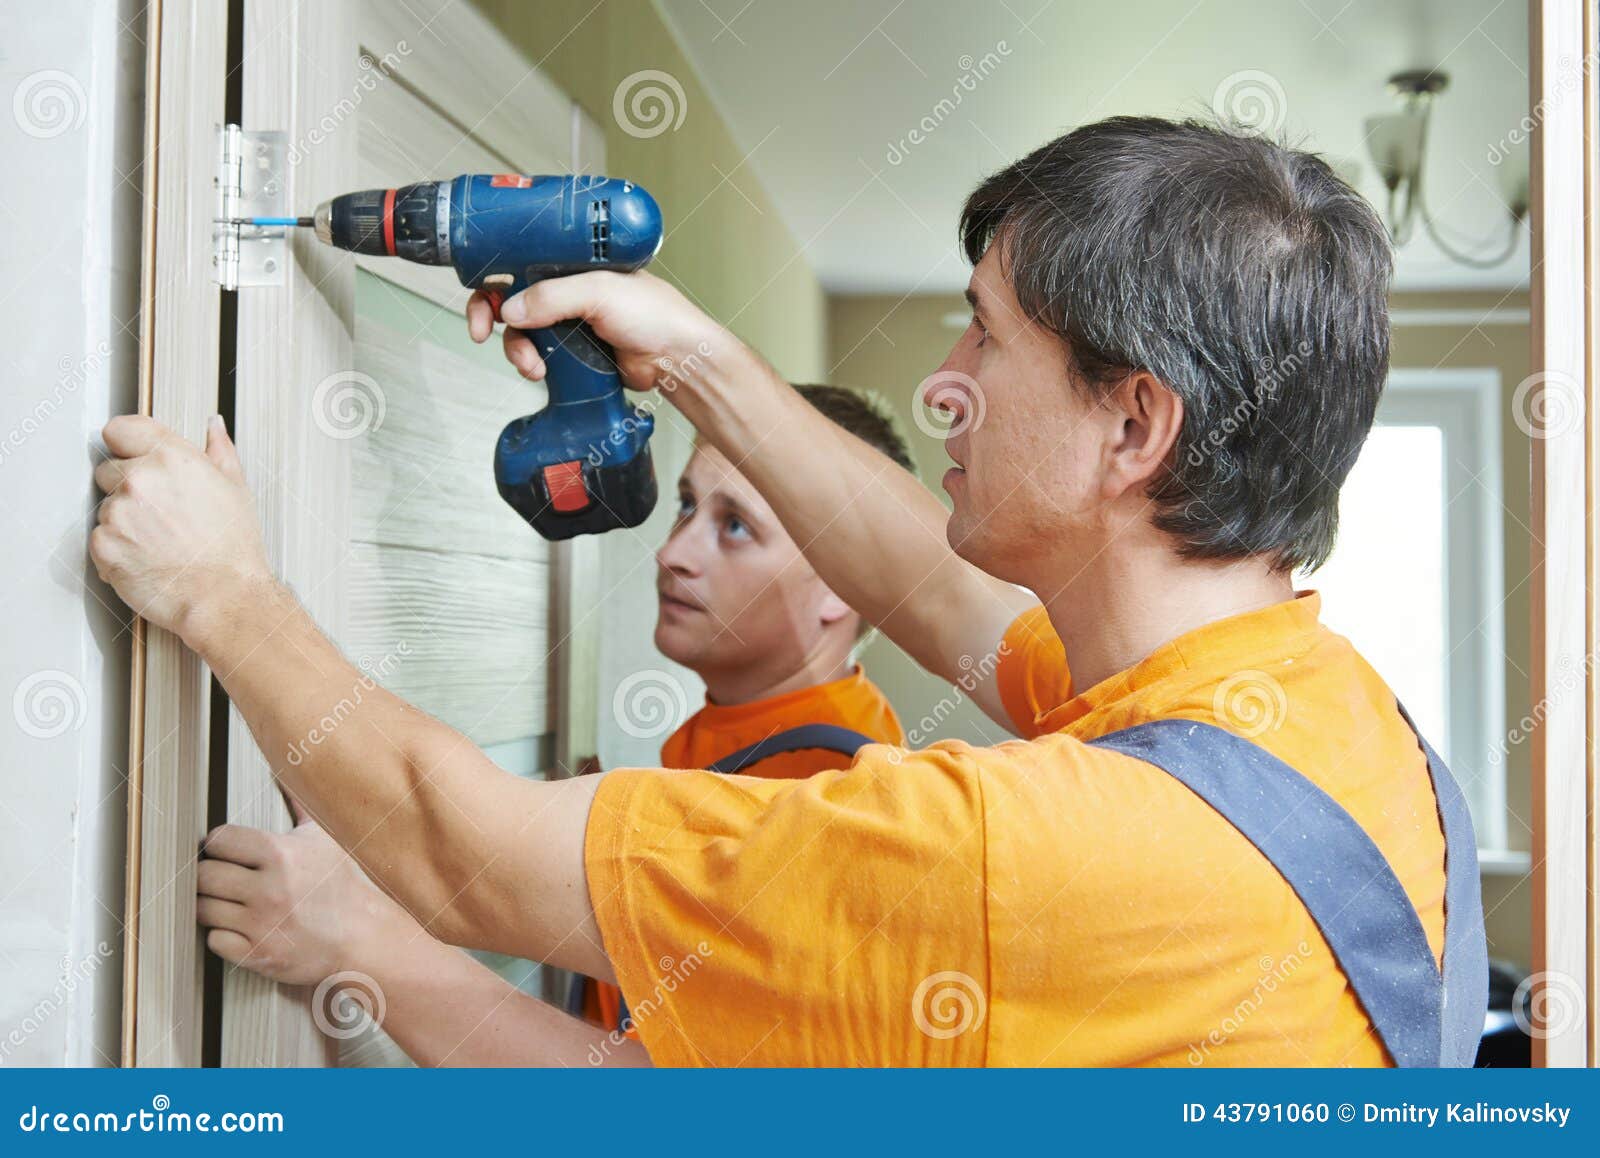 door installation workers